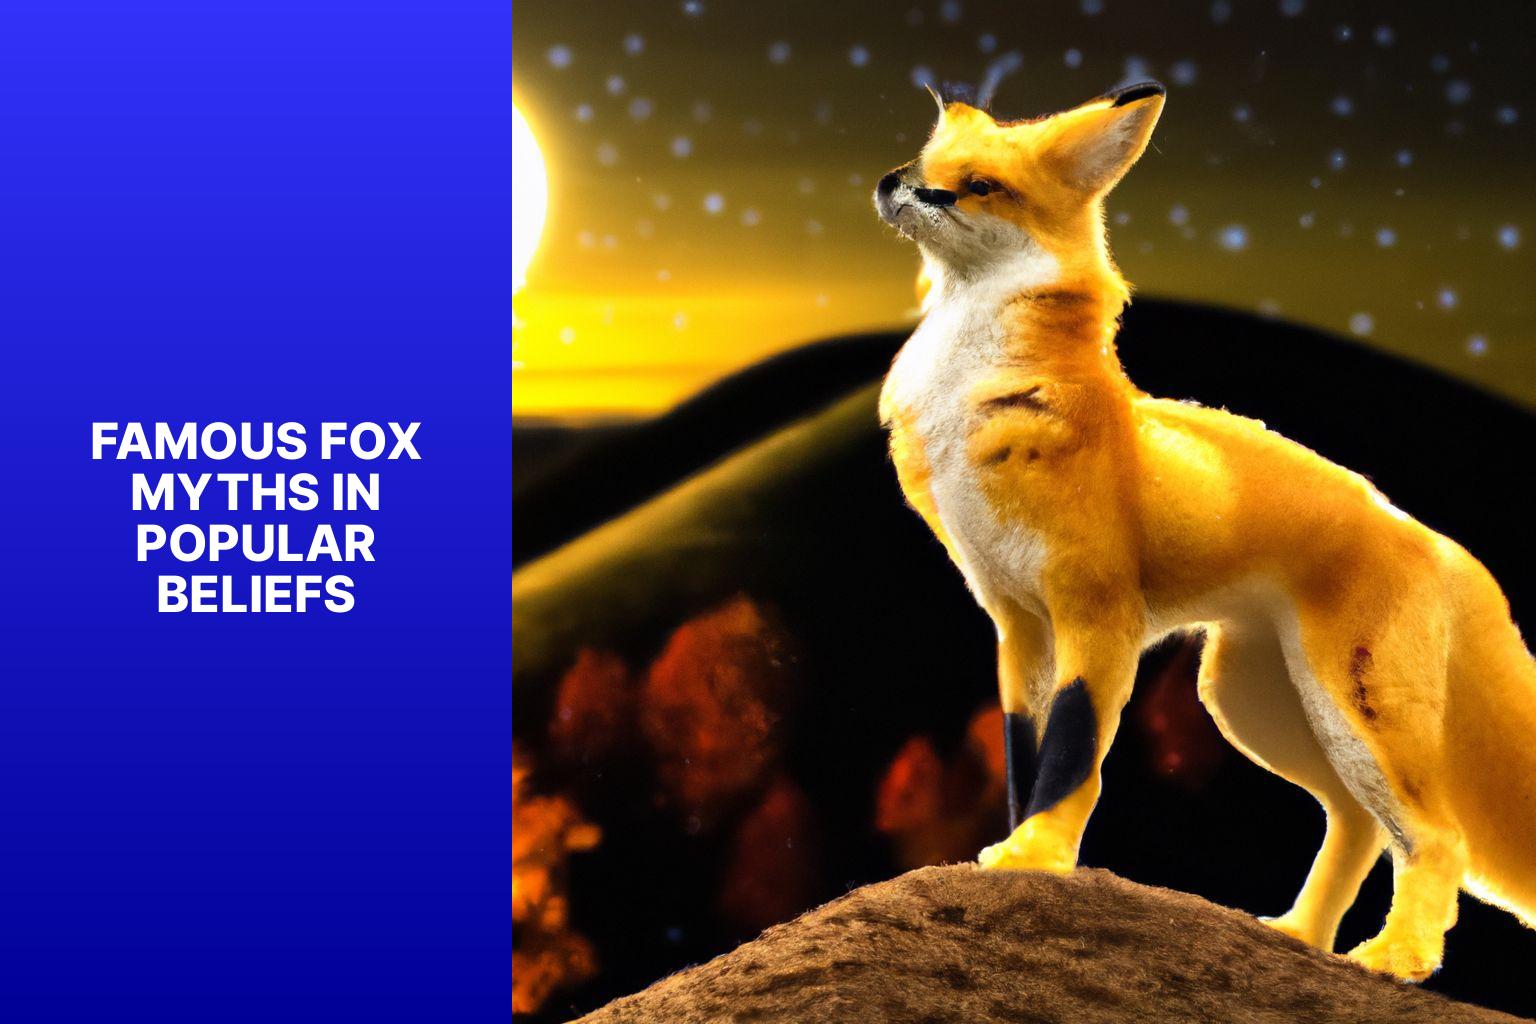 Famous Fox Myths in Popular Beliefs - Fox Myths in Popular Beliefs 